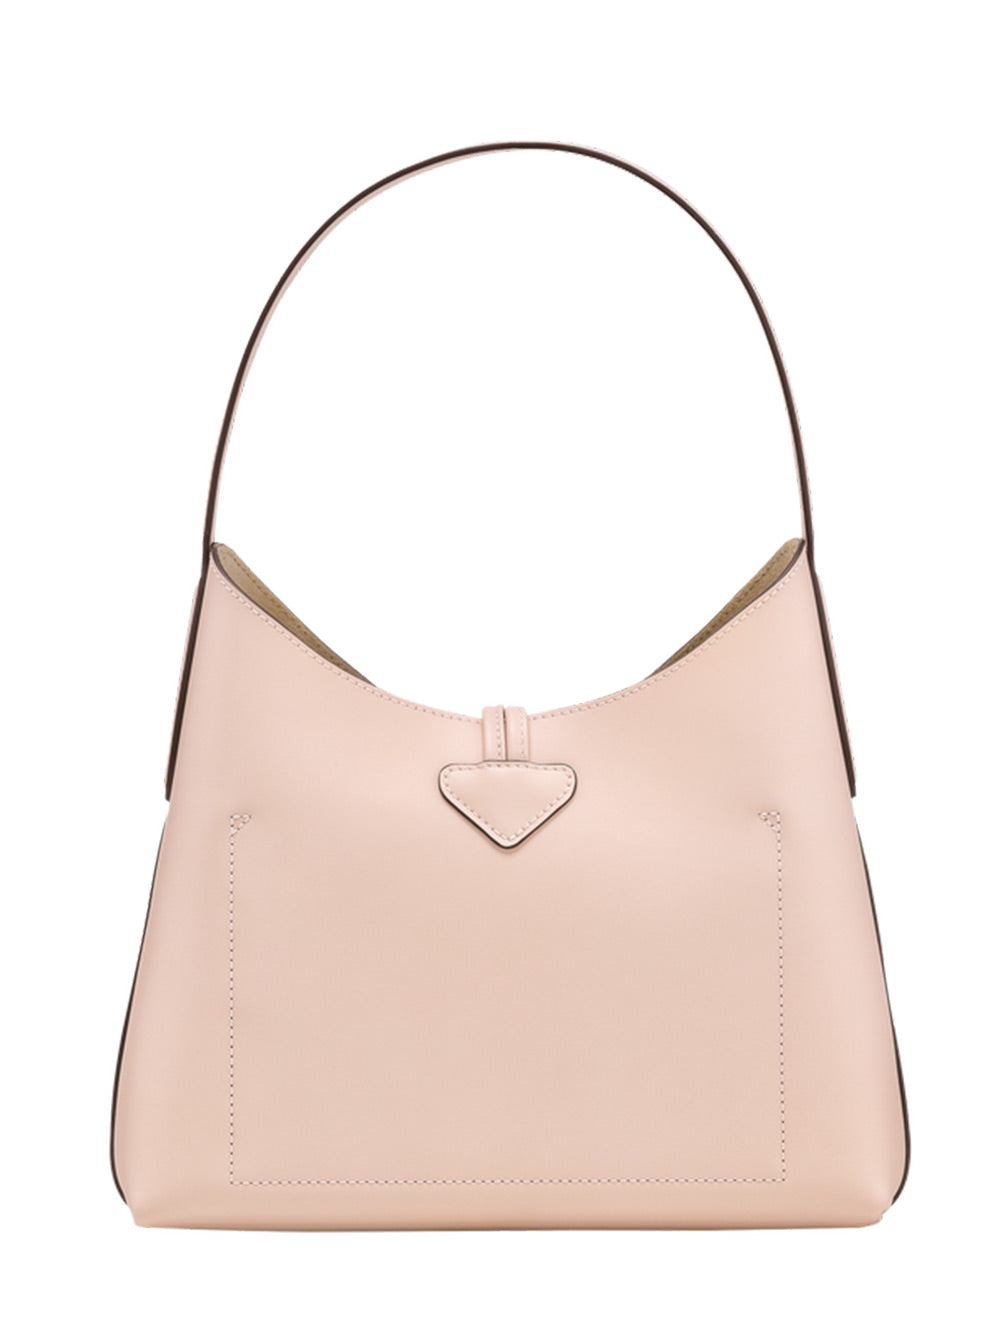 Longchamp Roseau Hobo Bag